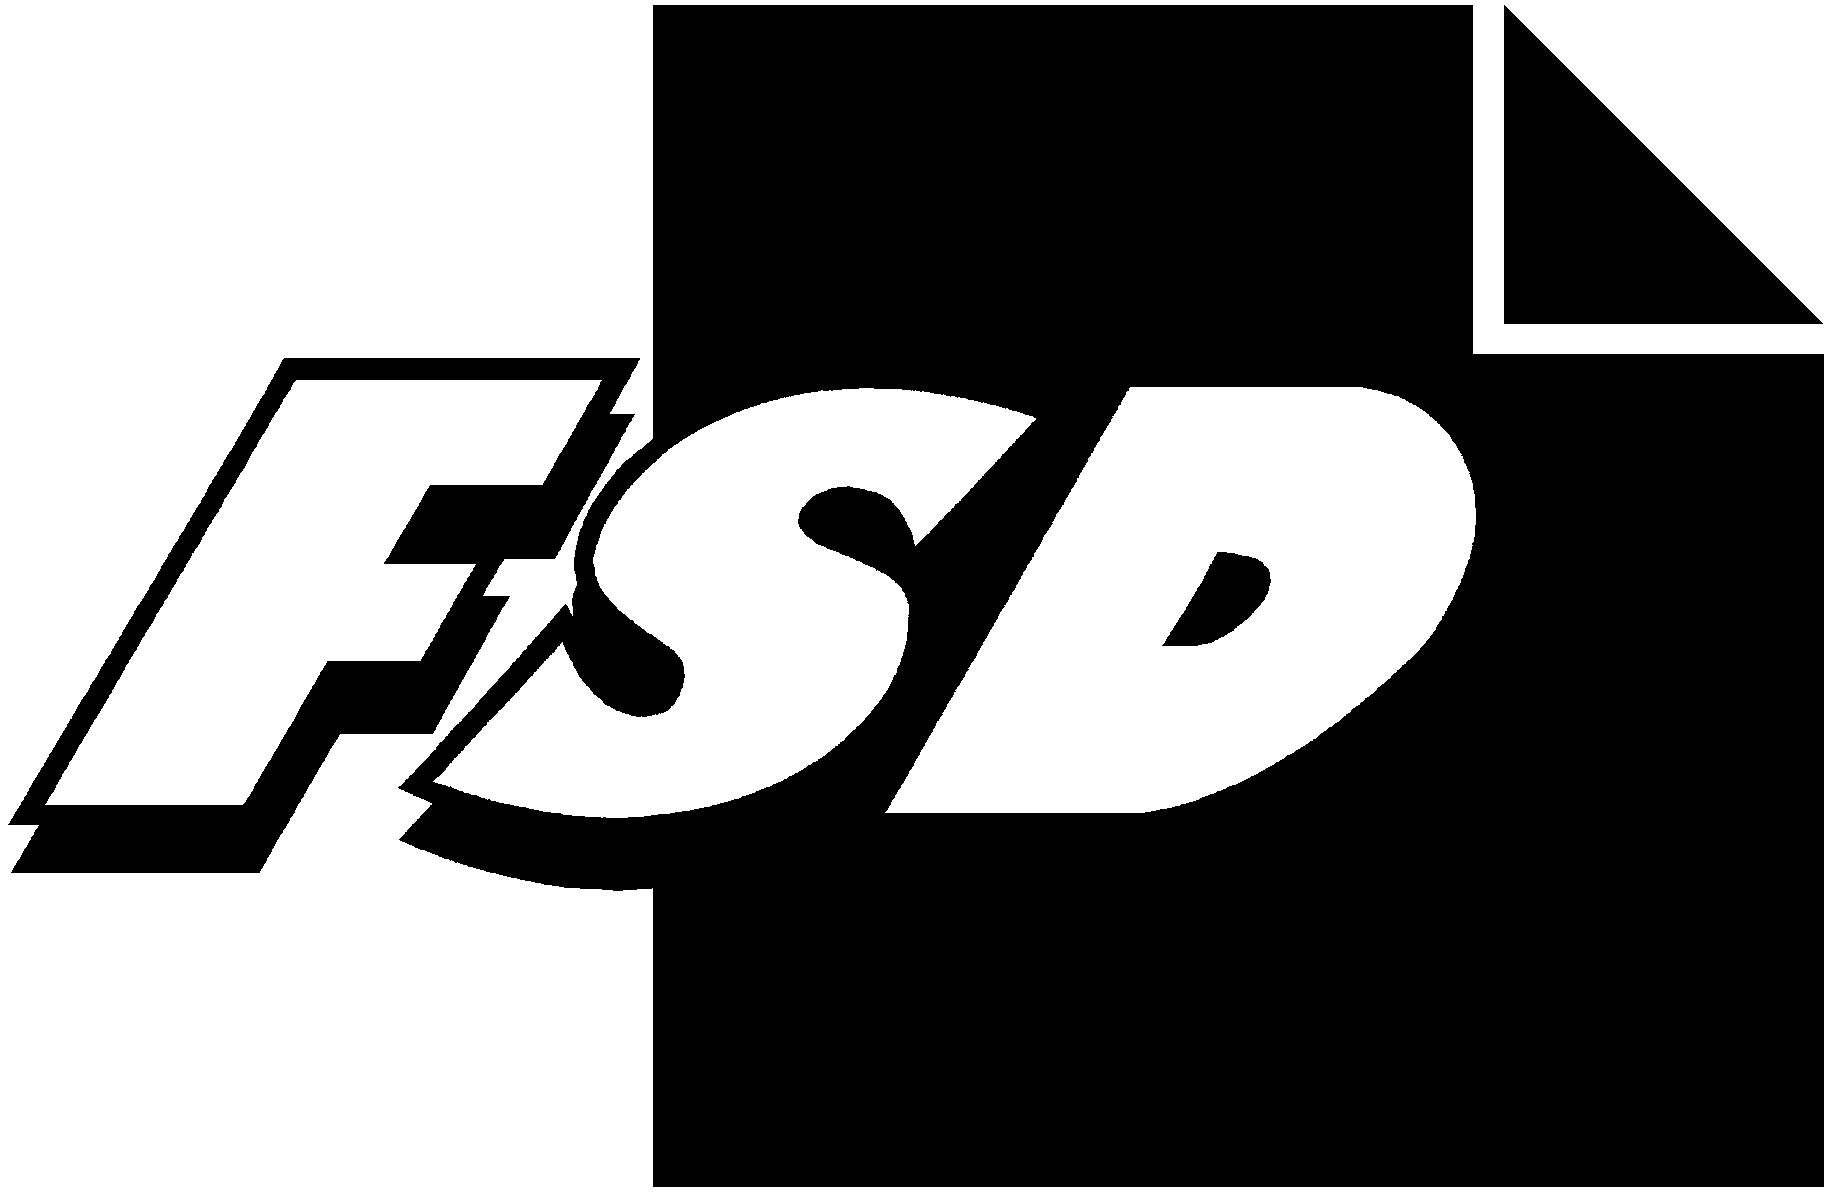 FSD2430 EVAn kansallinen asennetutkimus 2009